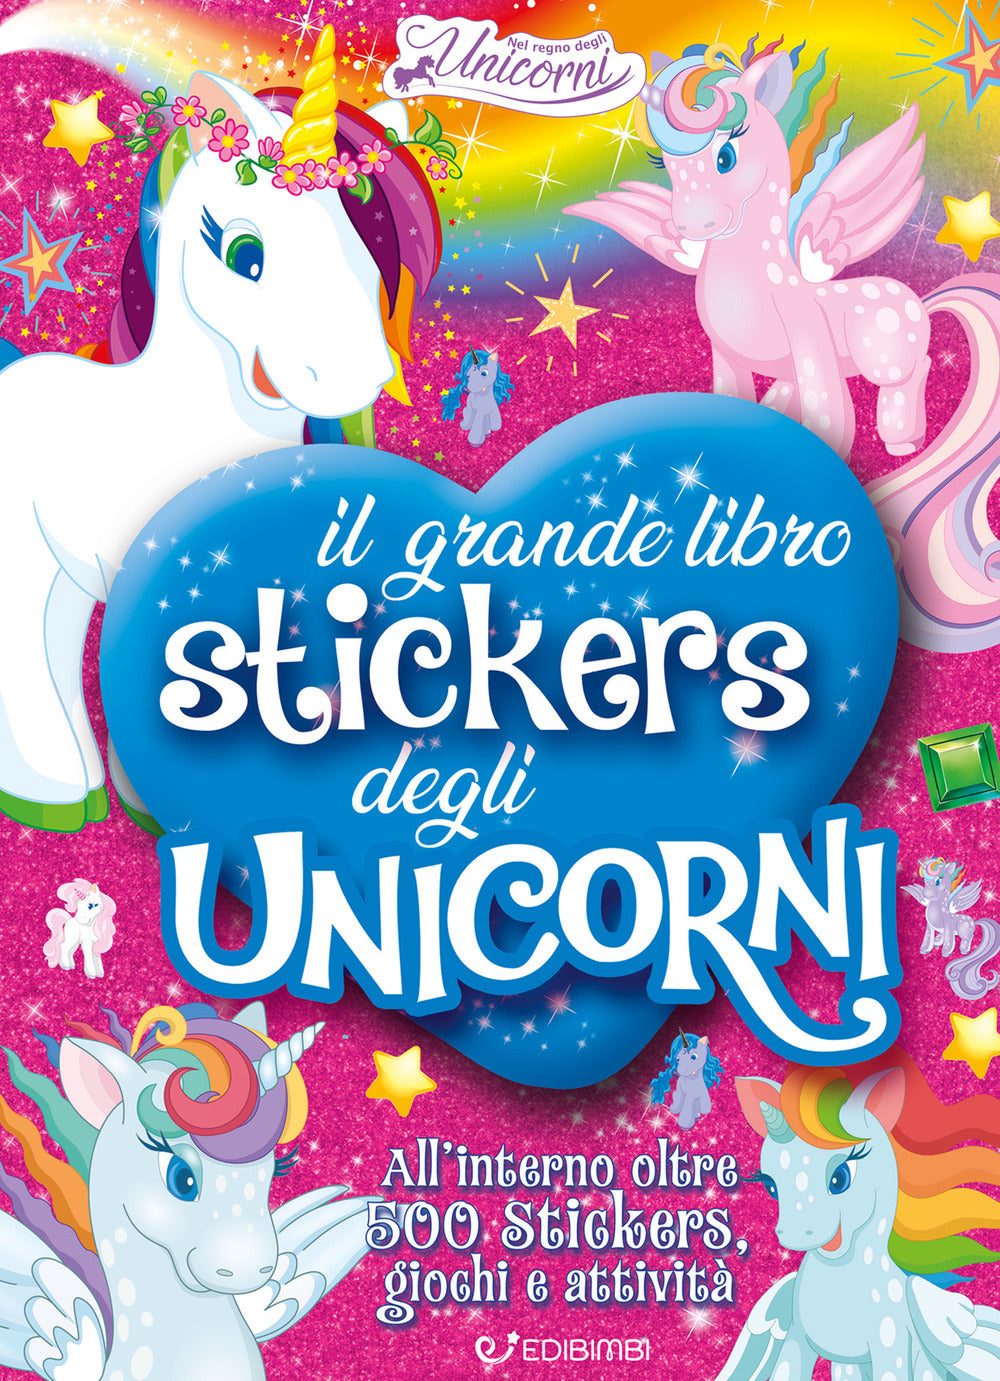 Il grande libro stickers degli unicorni. Il regno degli unicorni